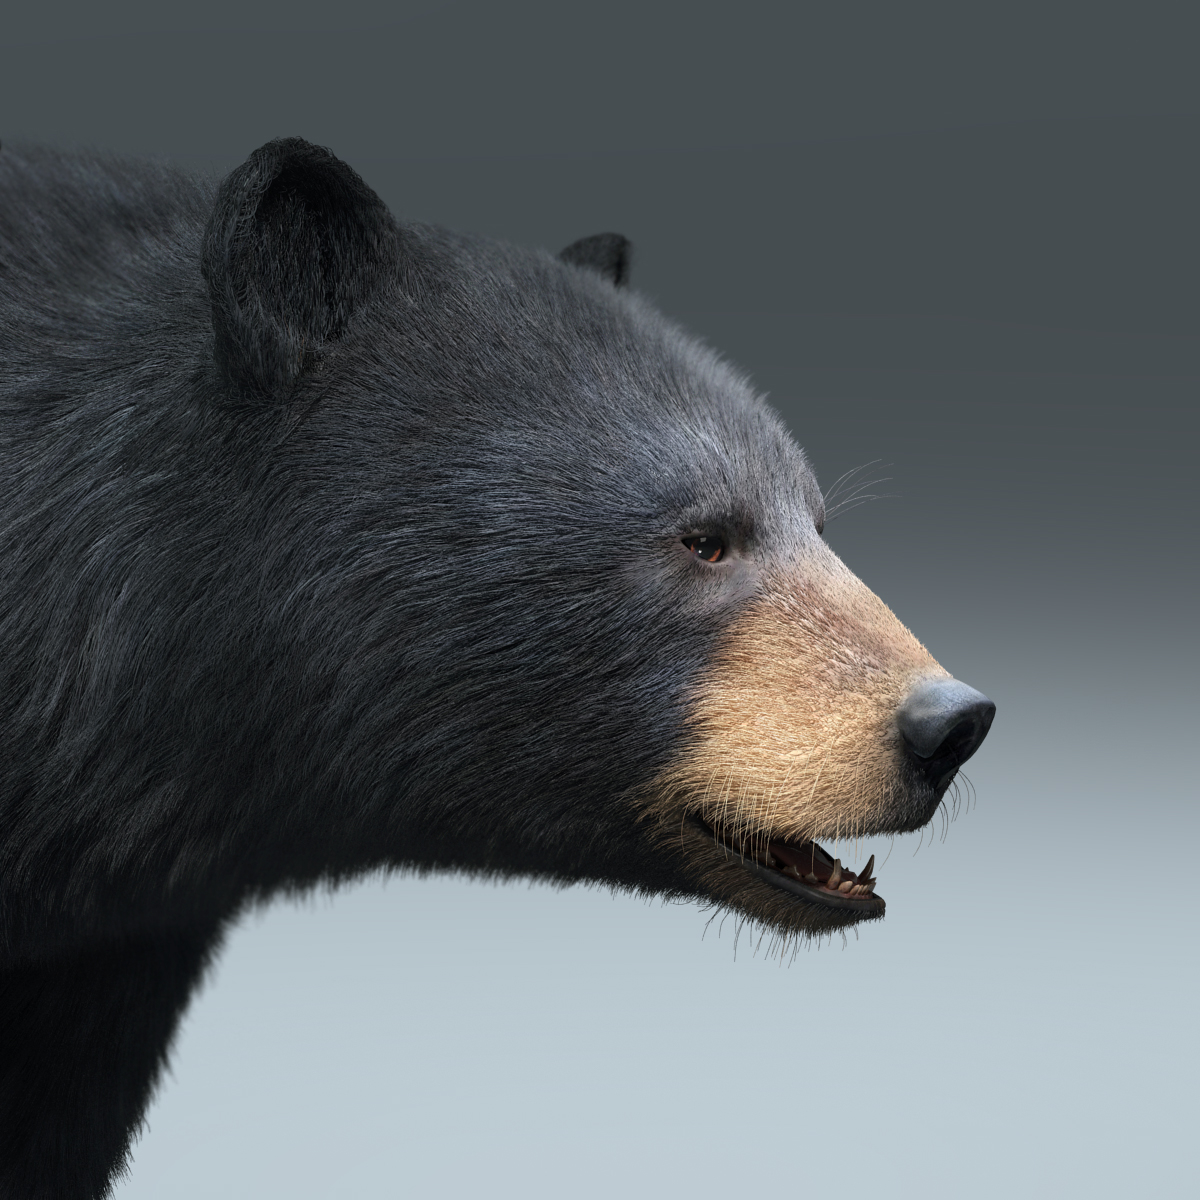 black bear fur